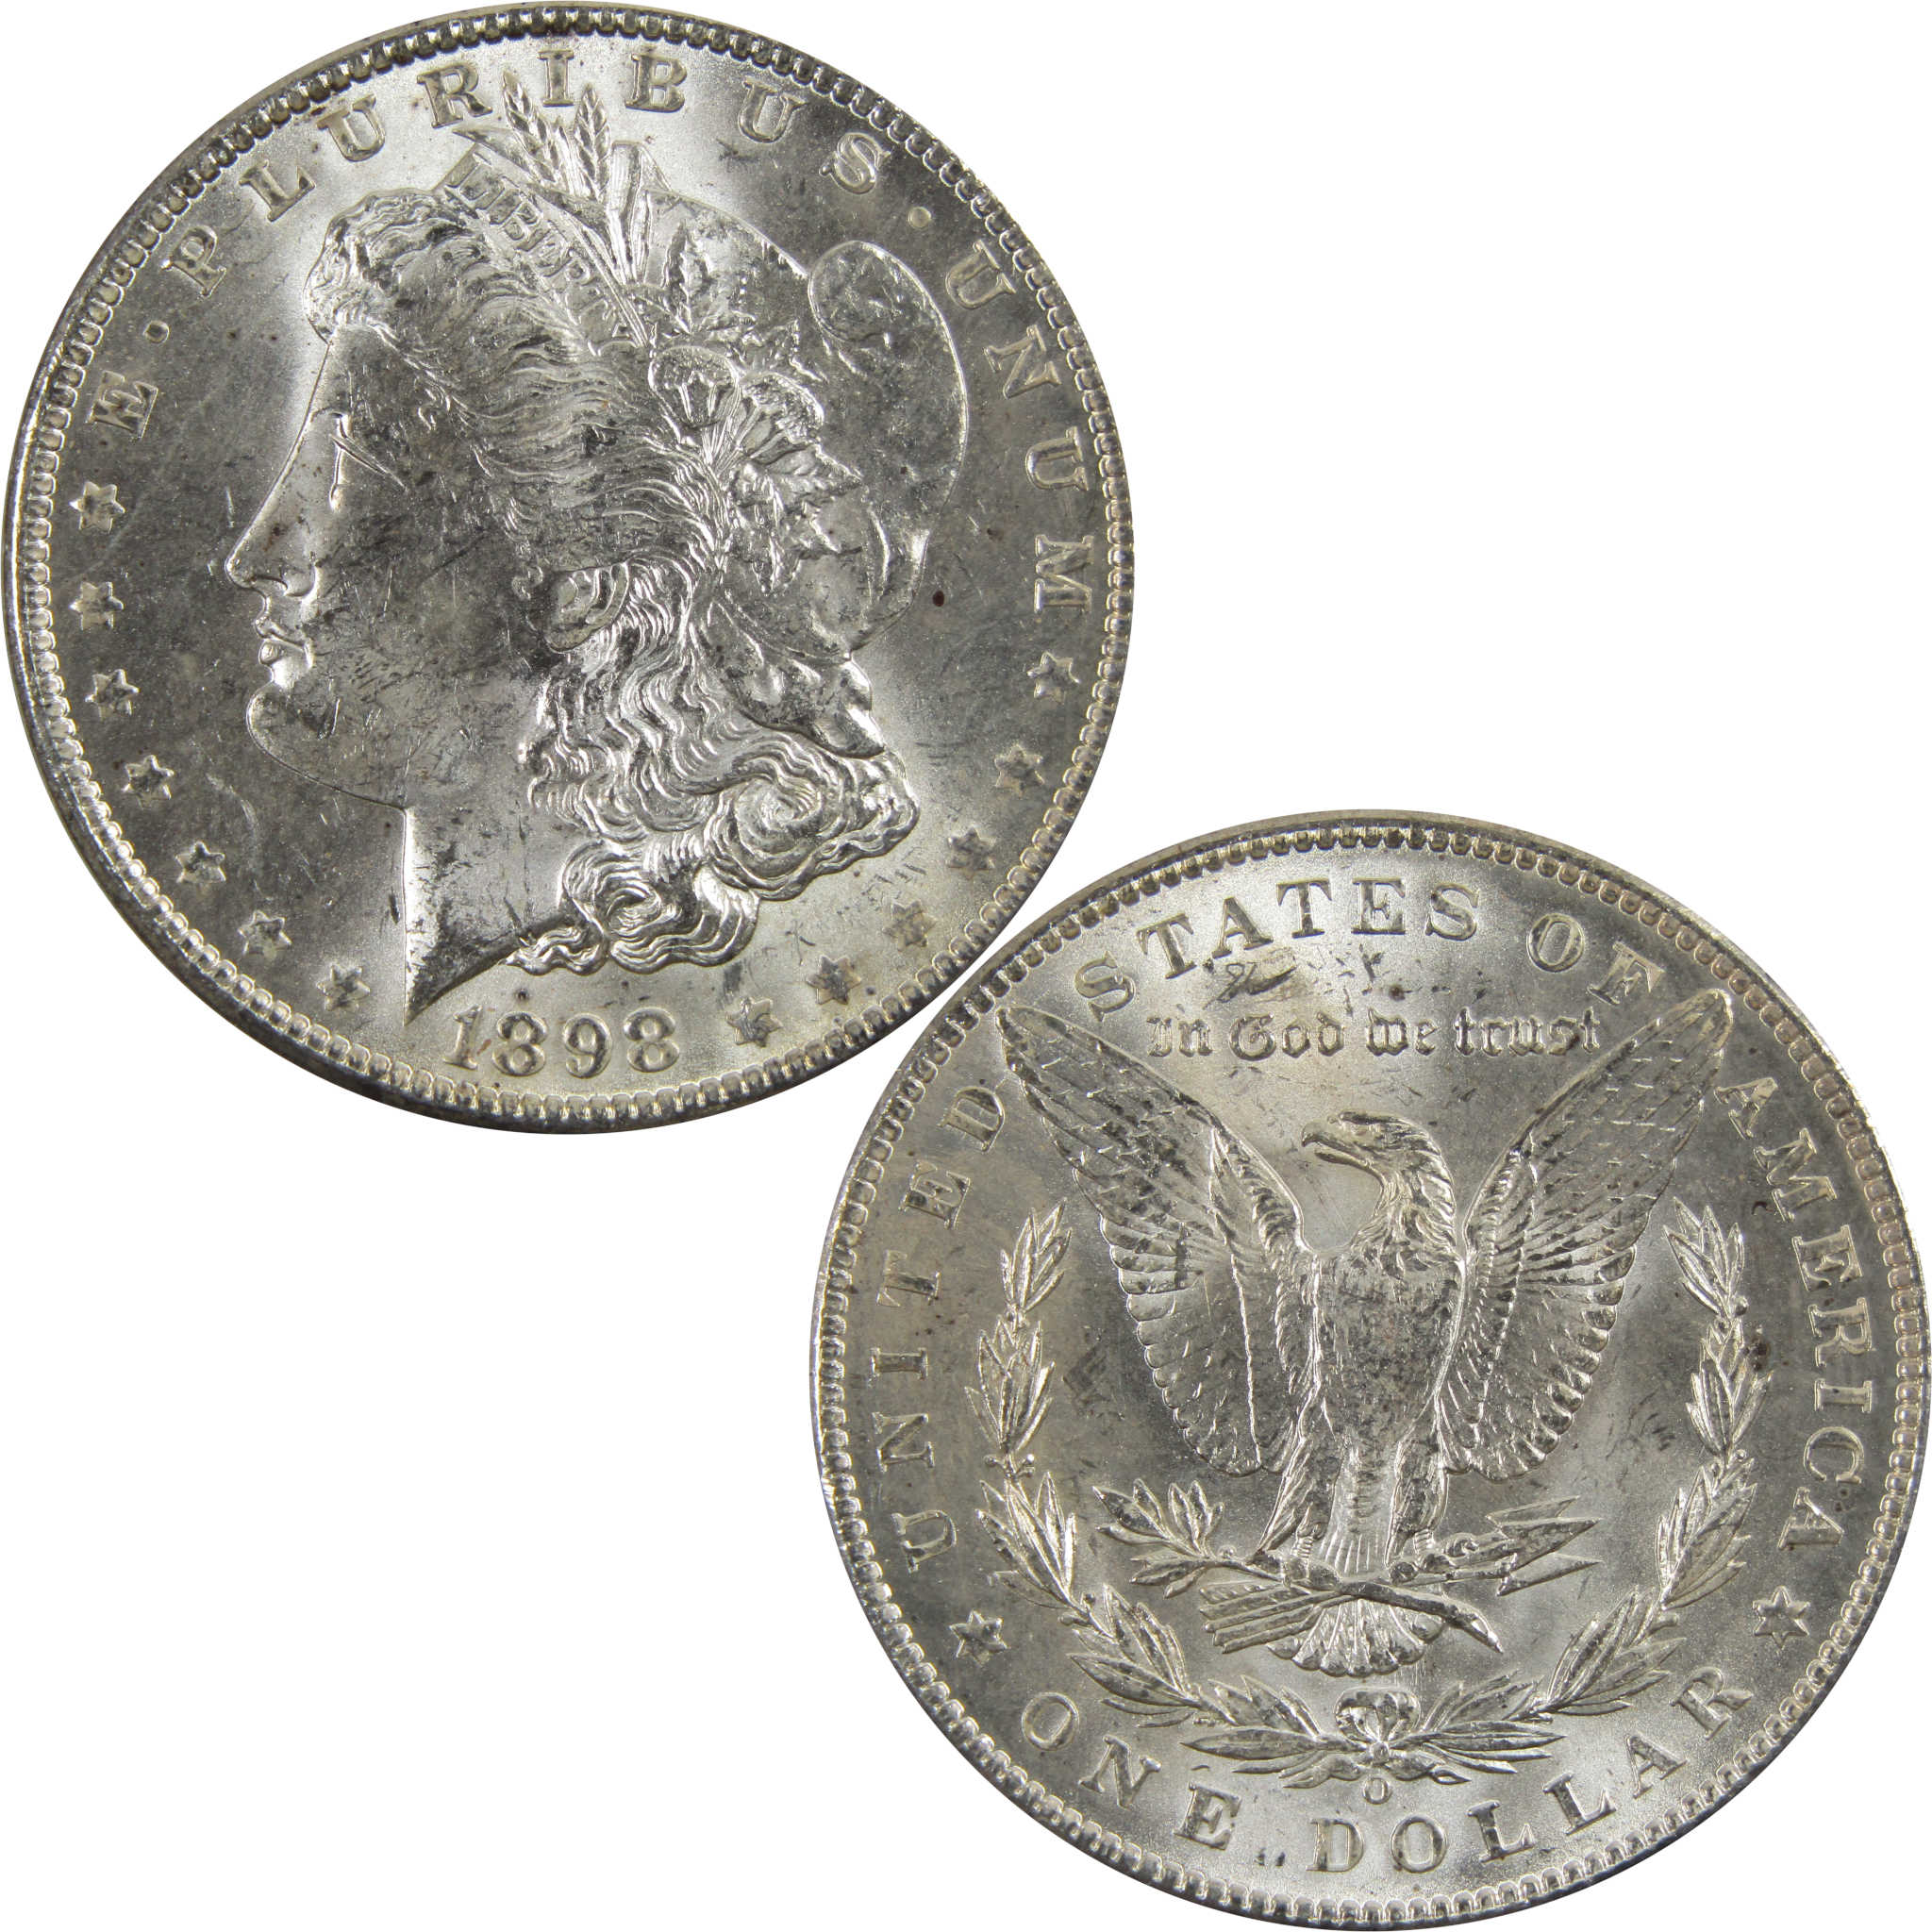 1898 O Morgan Dollar BU Uncirculated 90% Silver $1 Coin SKU:I5252 - Morgan coin - Morgan silver dollar - Morgan silver dollar for sale - Profile Coins &amp; Collectibles